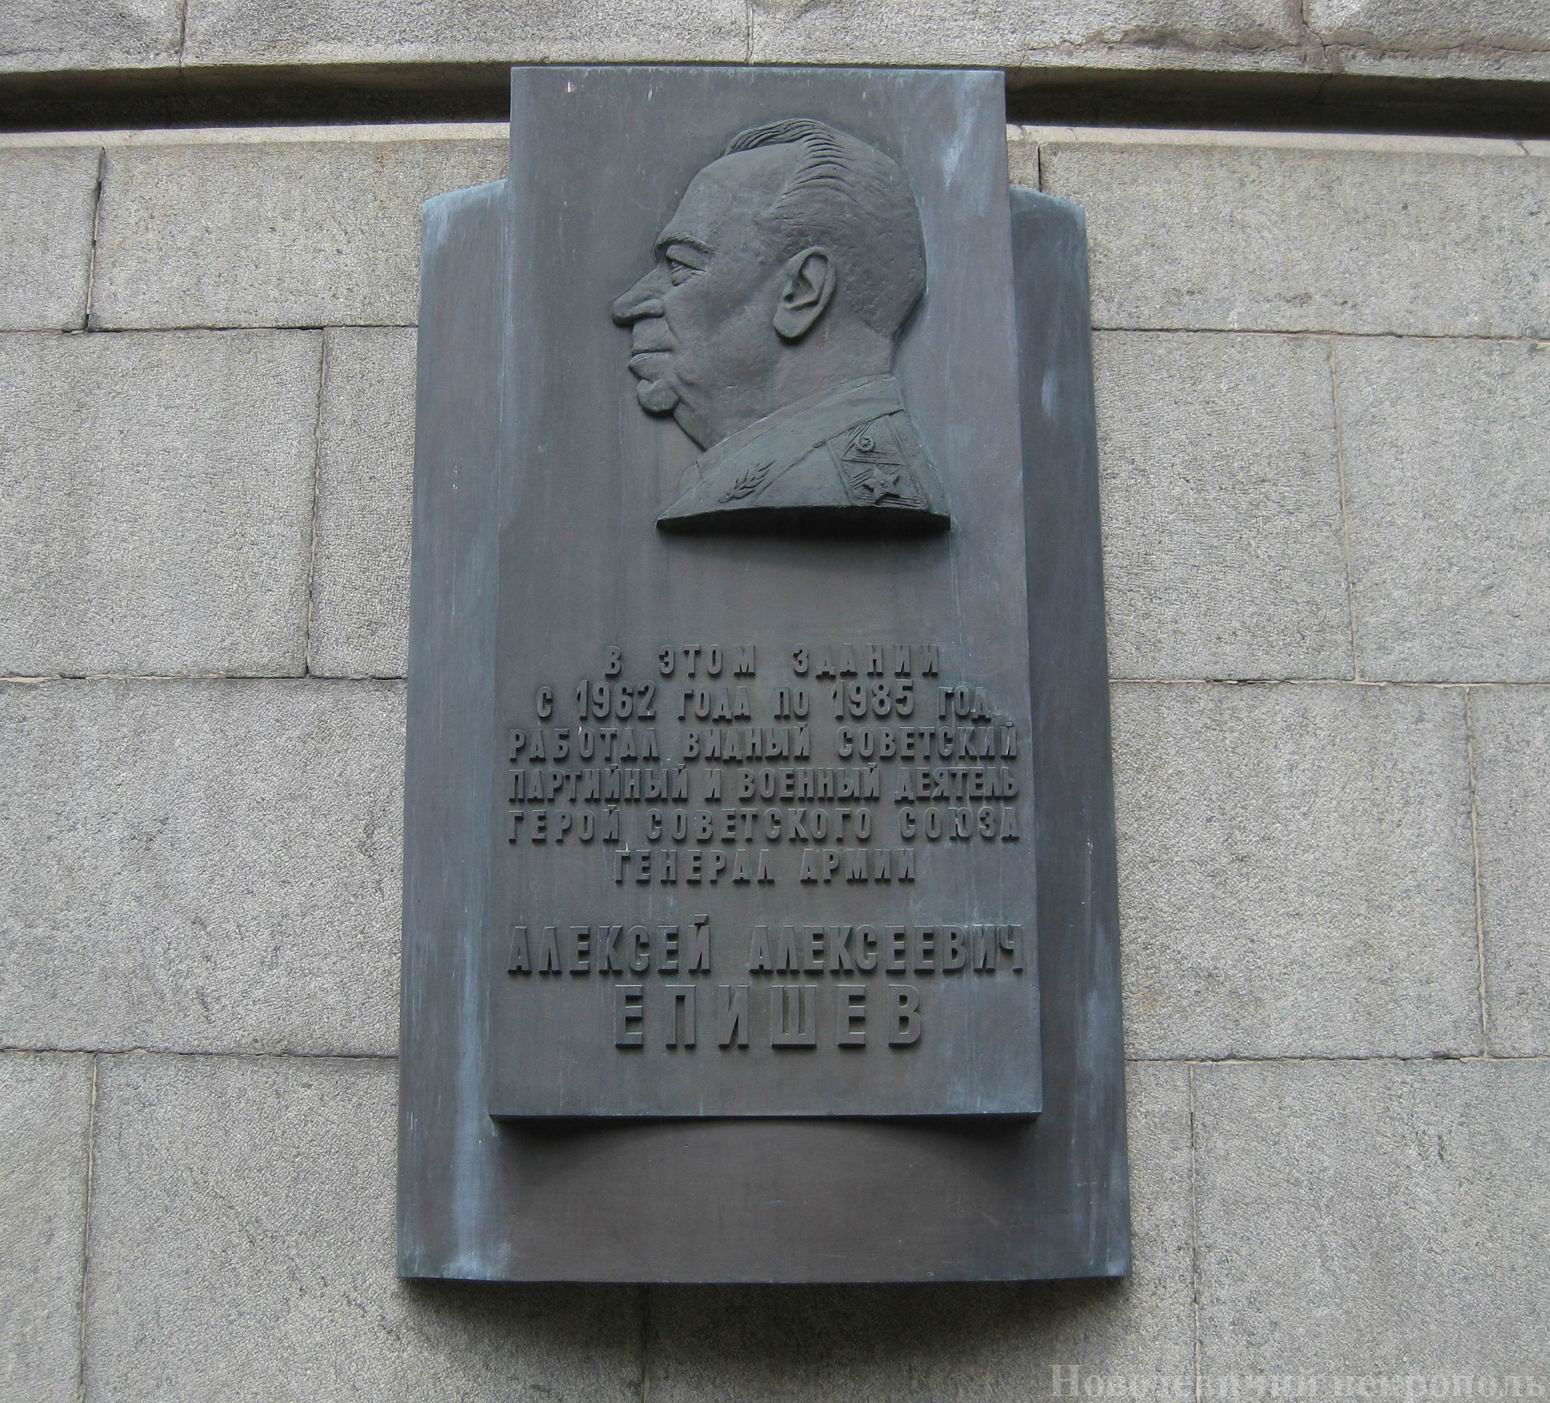 Мемориальная доска Епишеву А.А. (1908–1985), в Колымажном переулке, открыта в 1988.